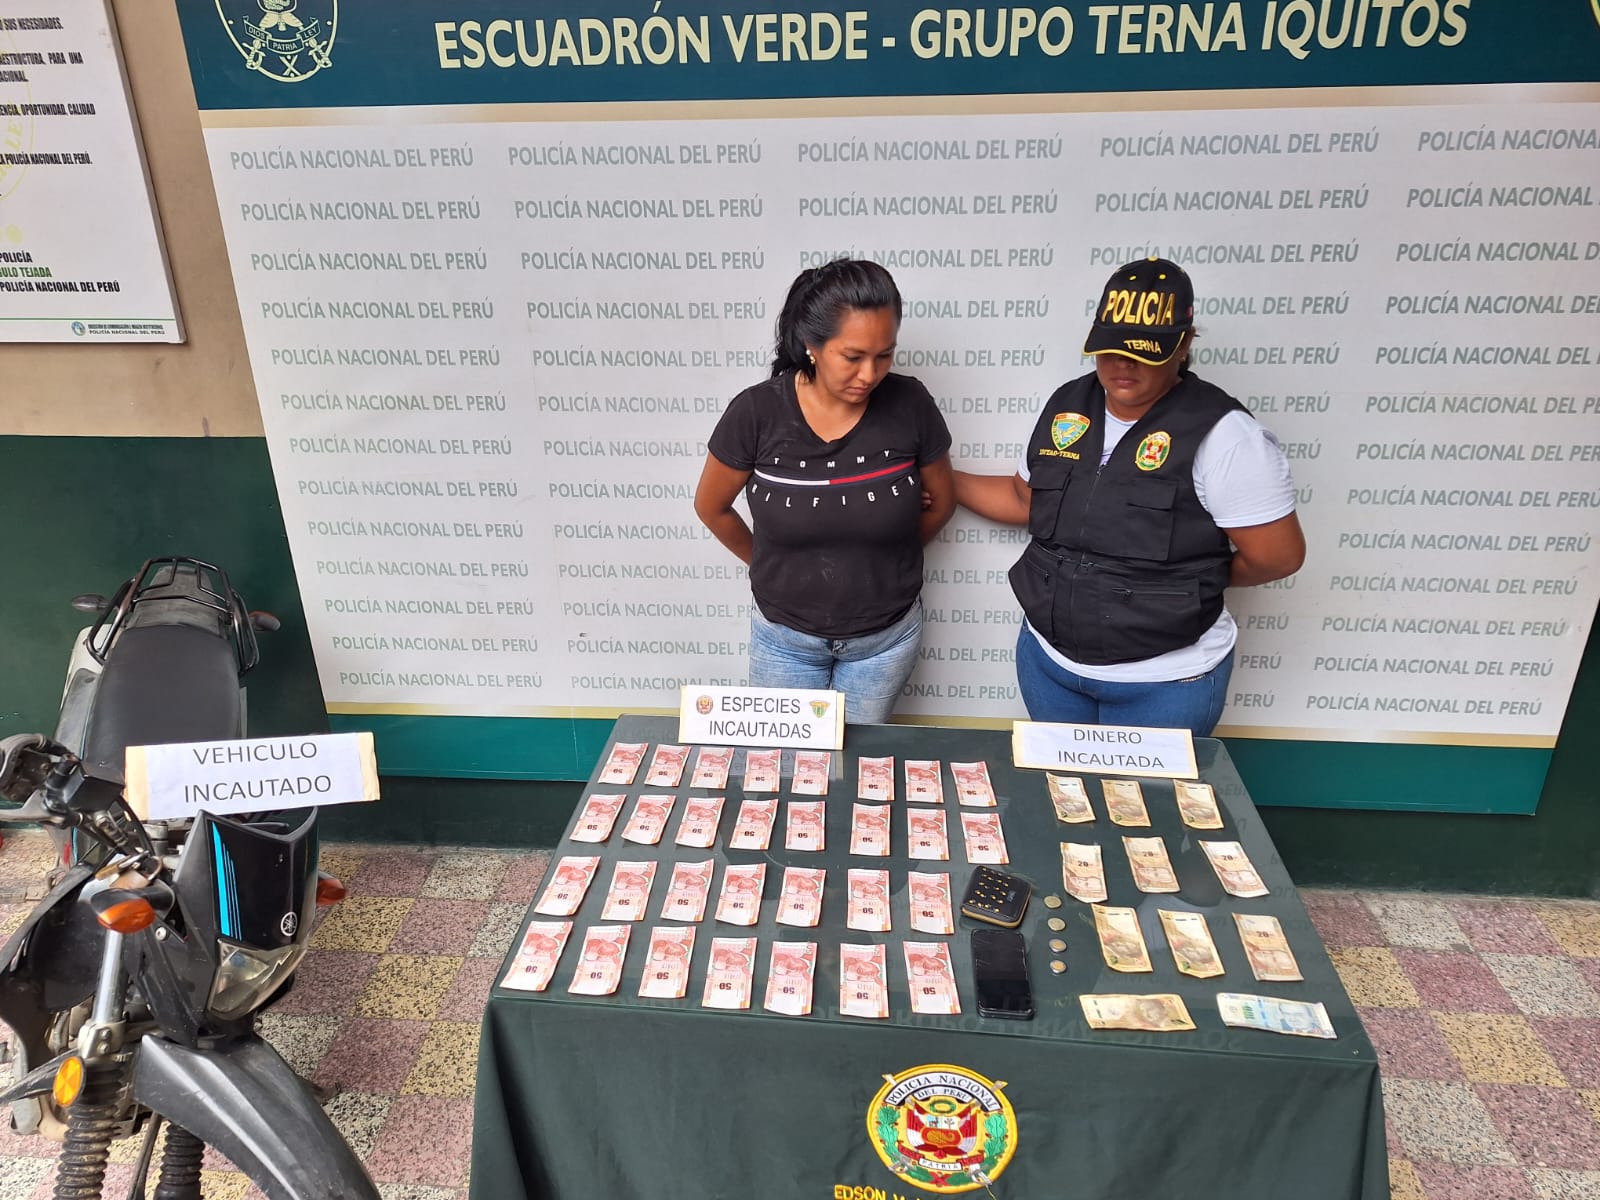 Agentes del Grupo Terna Iquitos detienen a mujer